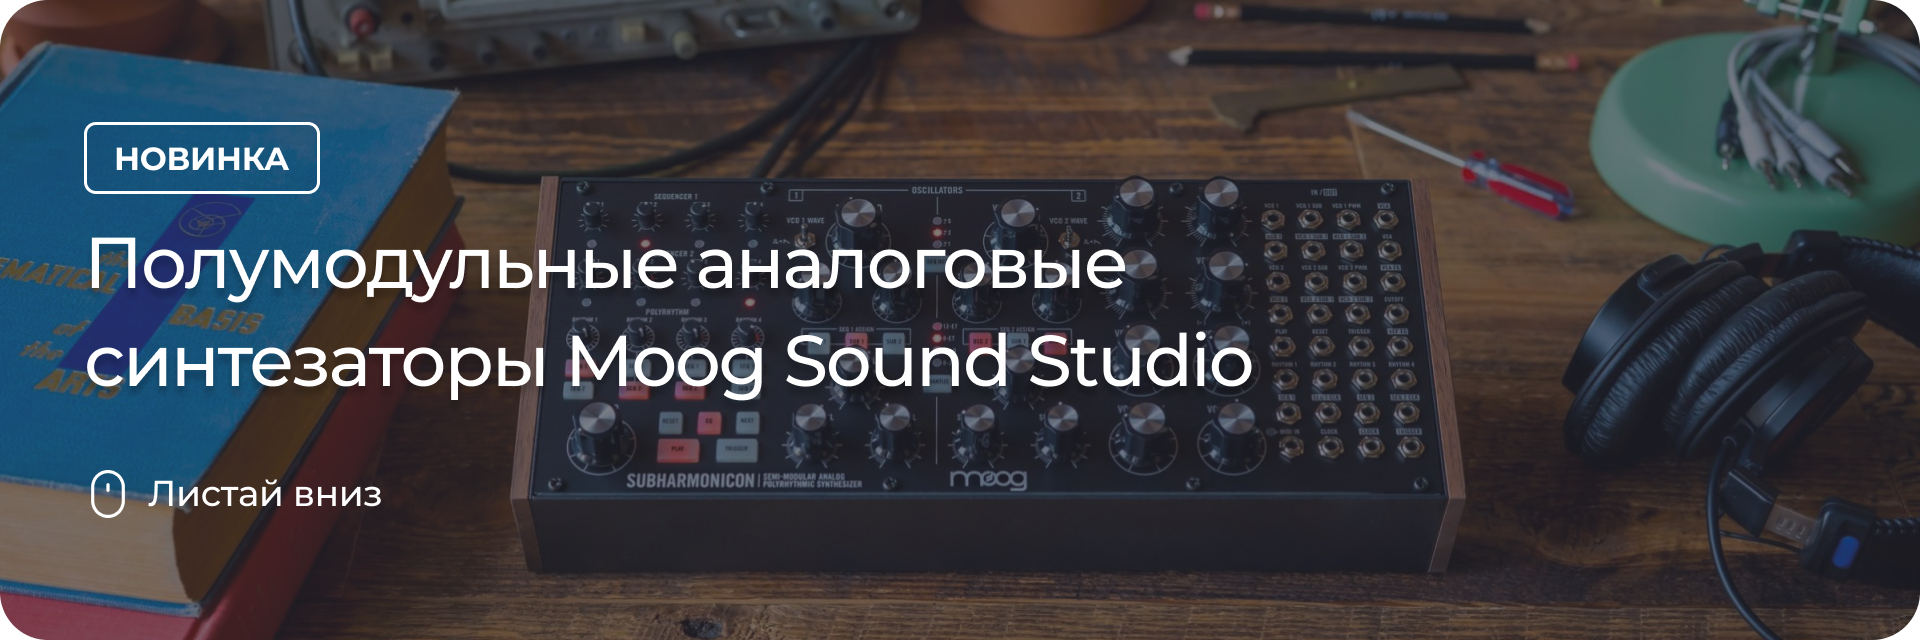 Полумодульные аналоговые синтезаторы Moog Sound Studio